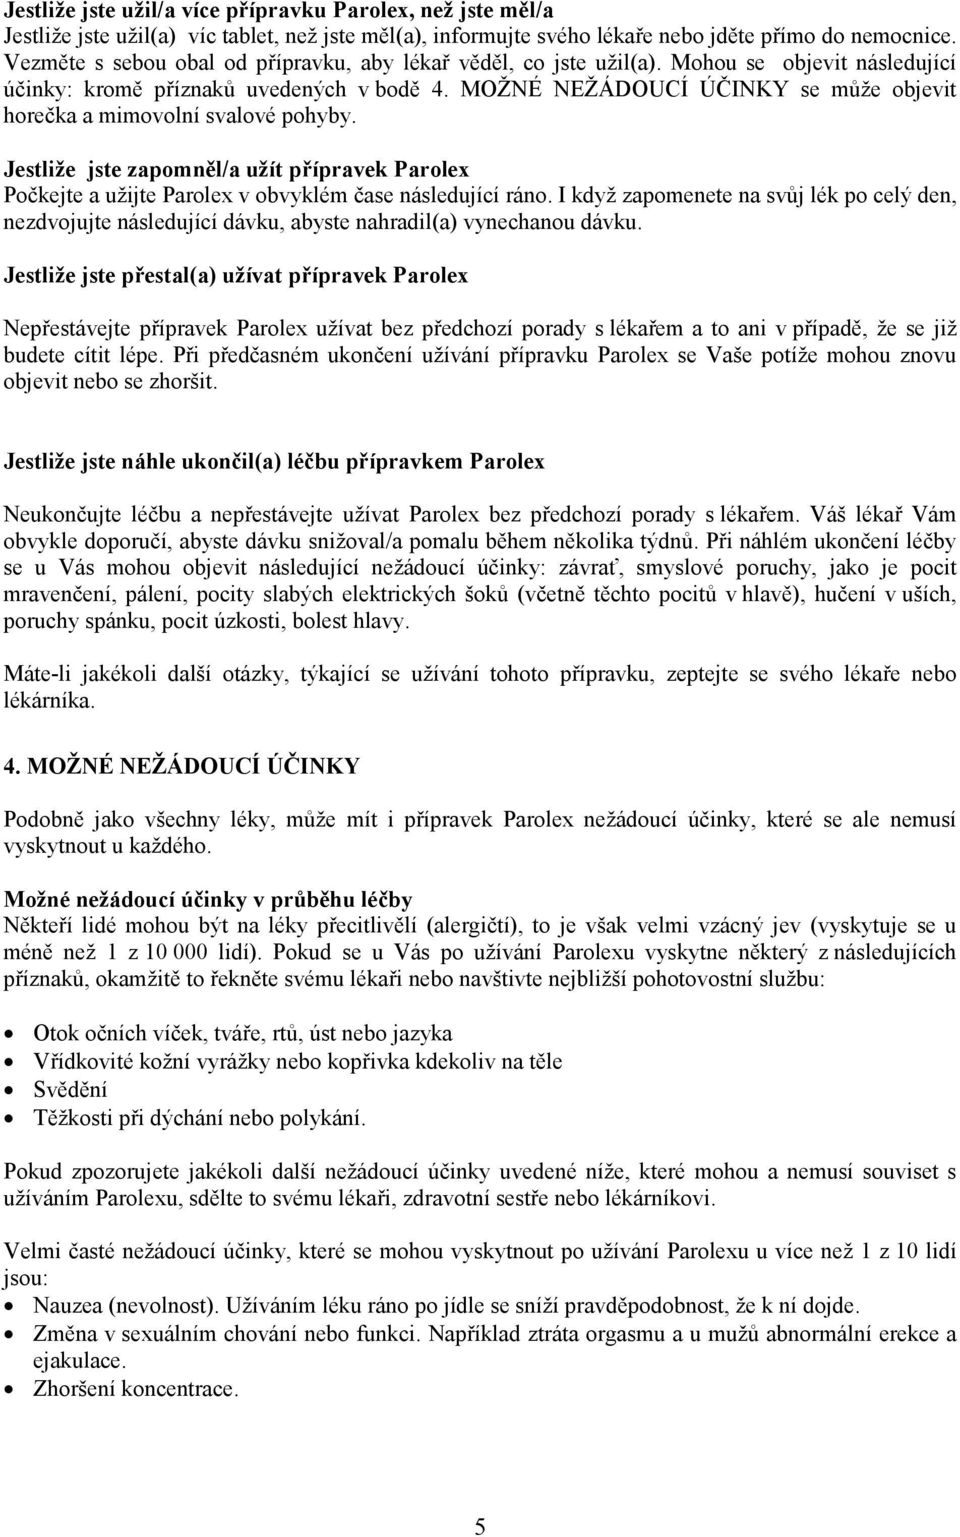 PŘÍBALOVÁ INFORMACE: INFORMACE PRO UŽIVATELE. PAROLEX 20 (paroxetini  hydrochloridum) potahované tablety - PDF Stažení zdarma